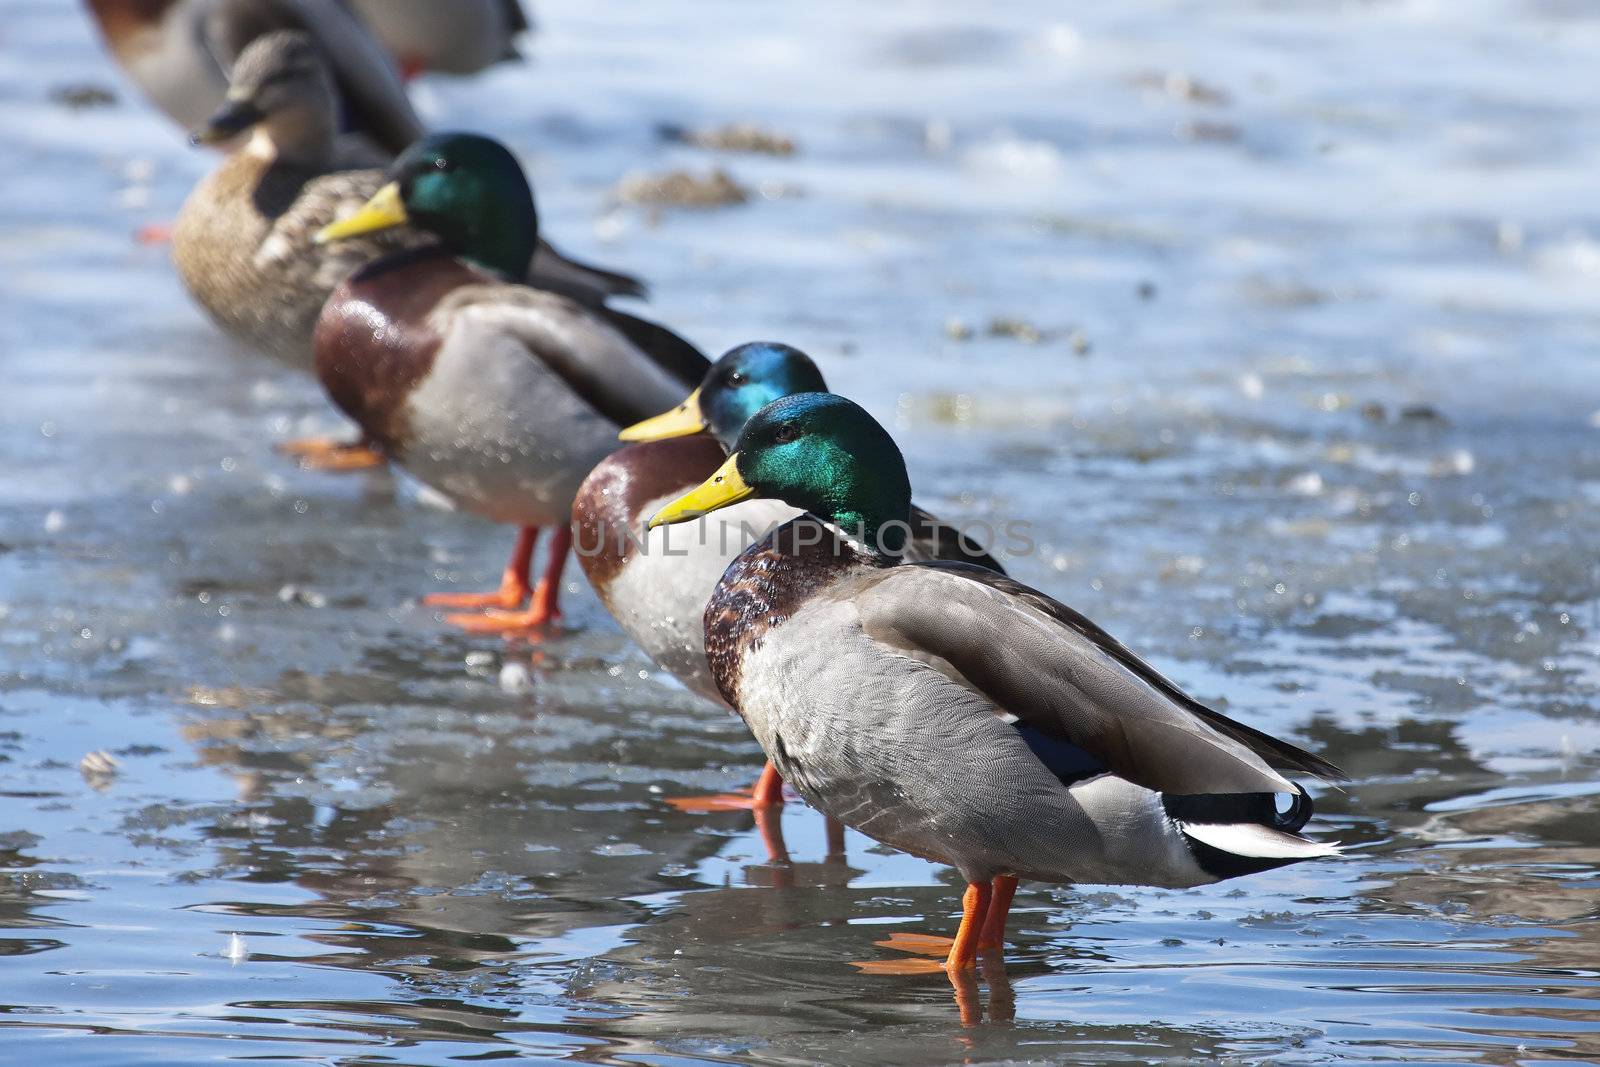 Mallard ducks lined up. by Coffee999